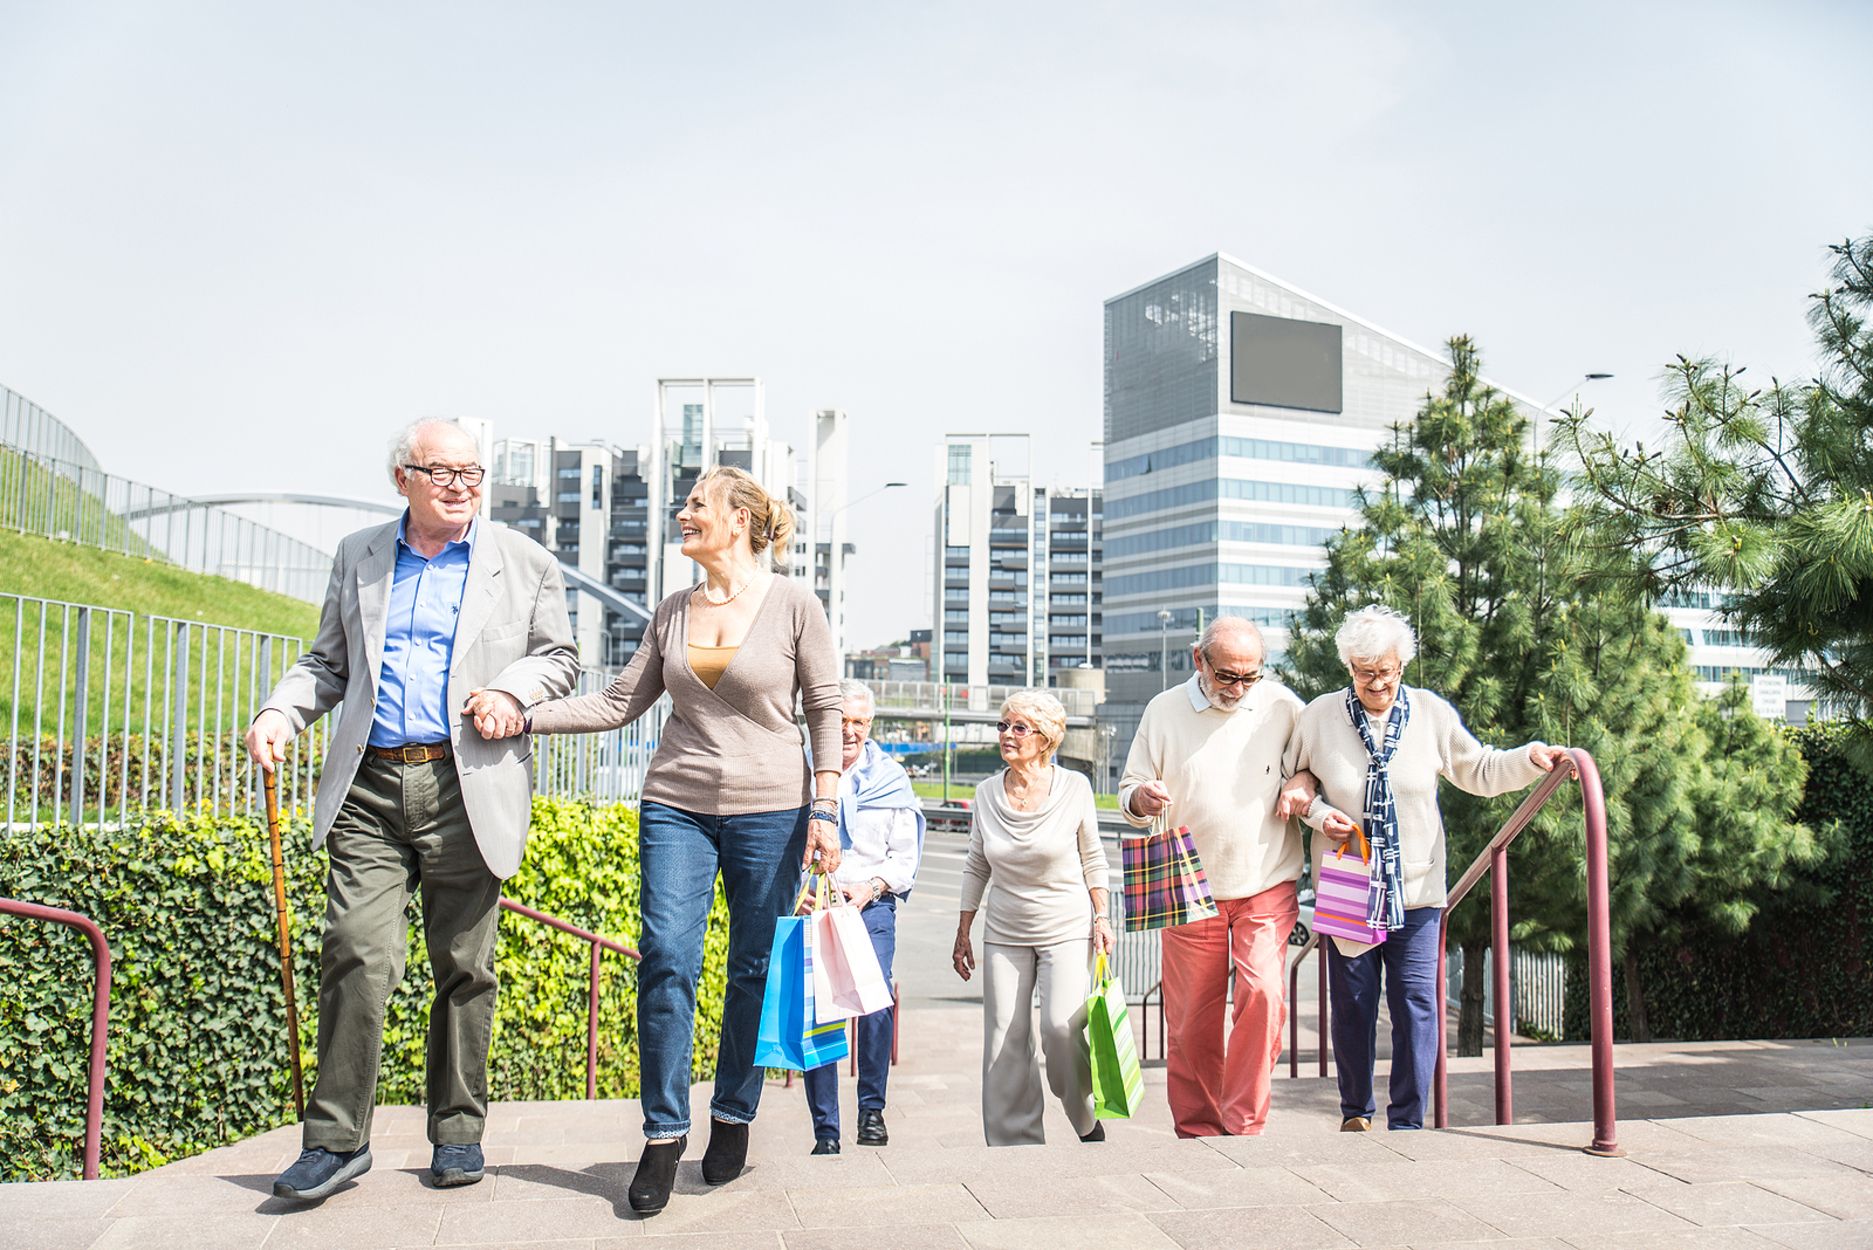 Los mayores quieren diseñar las ciudades amigables: "Sabemos mejor que nadie qué necesitamos"